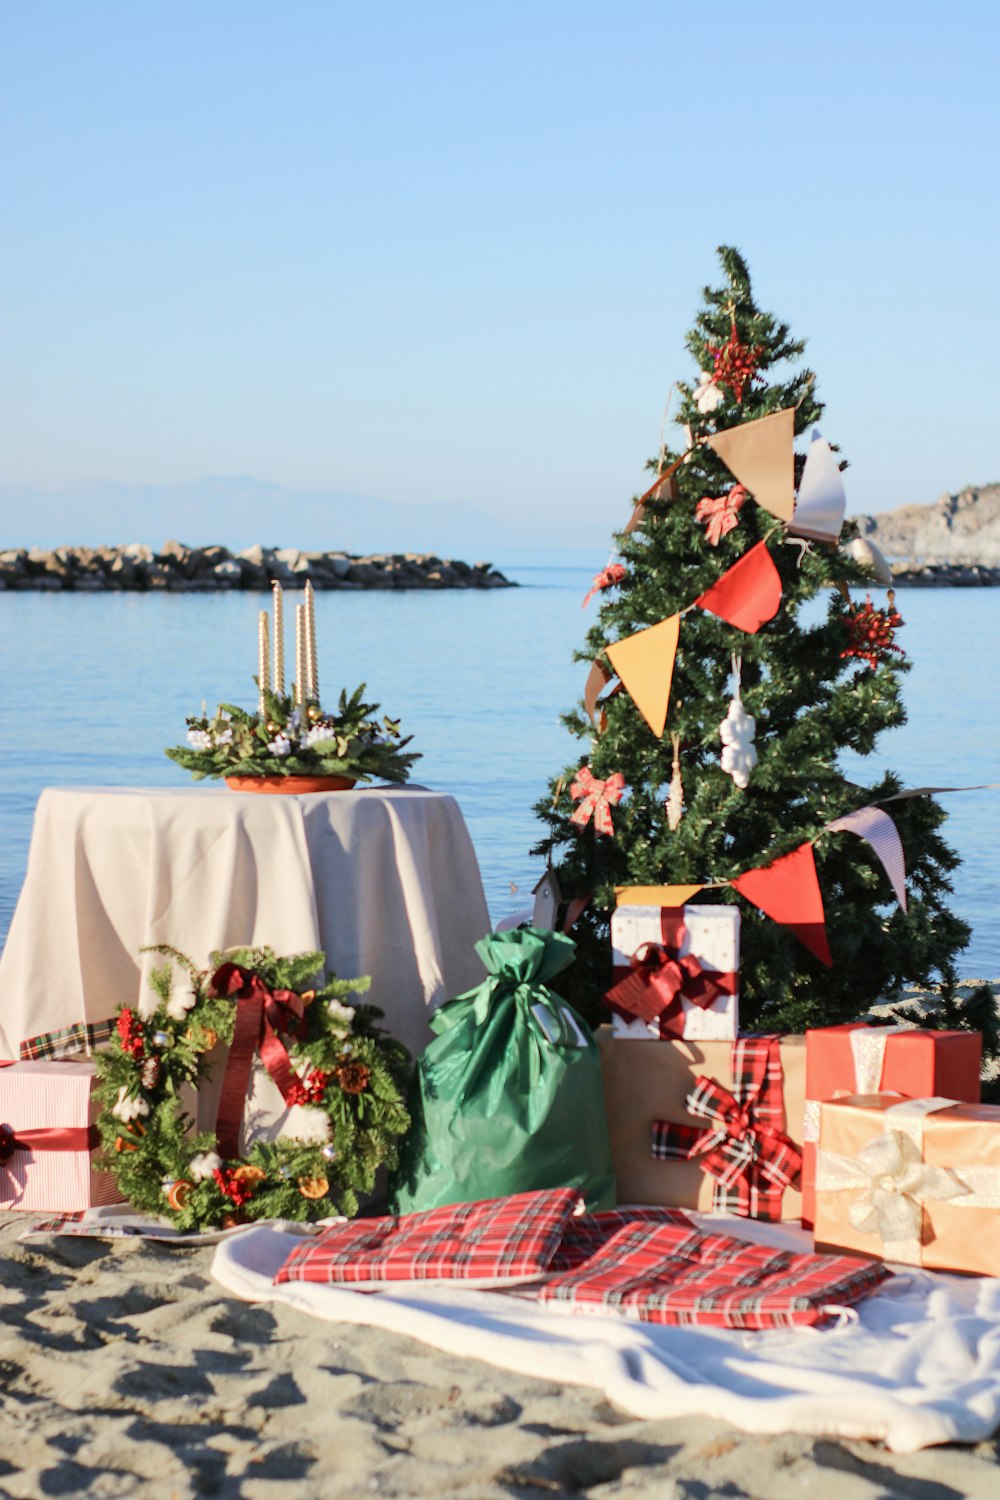 Ein Weihnachtsbaum am Strand mit Geschenken darunter